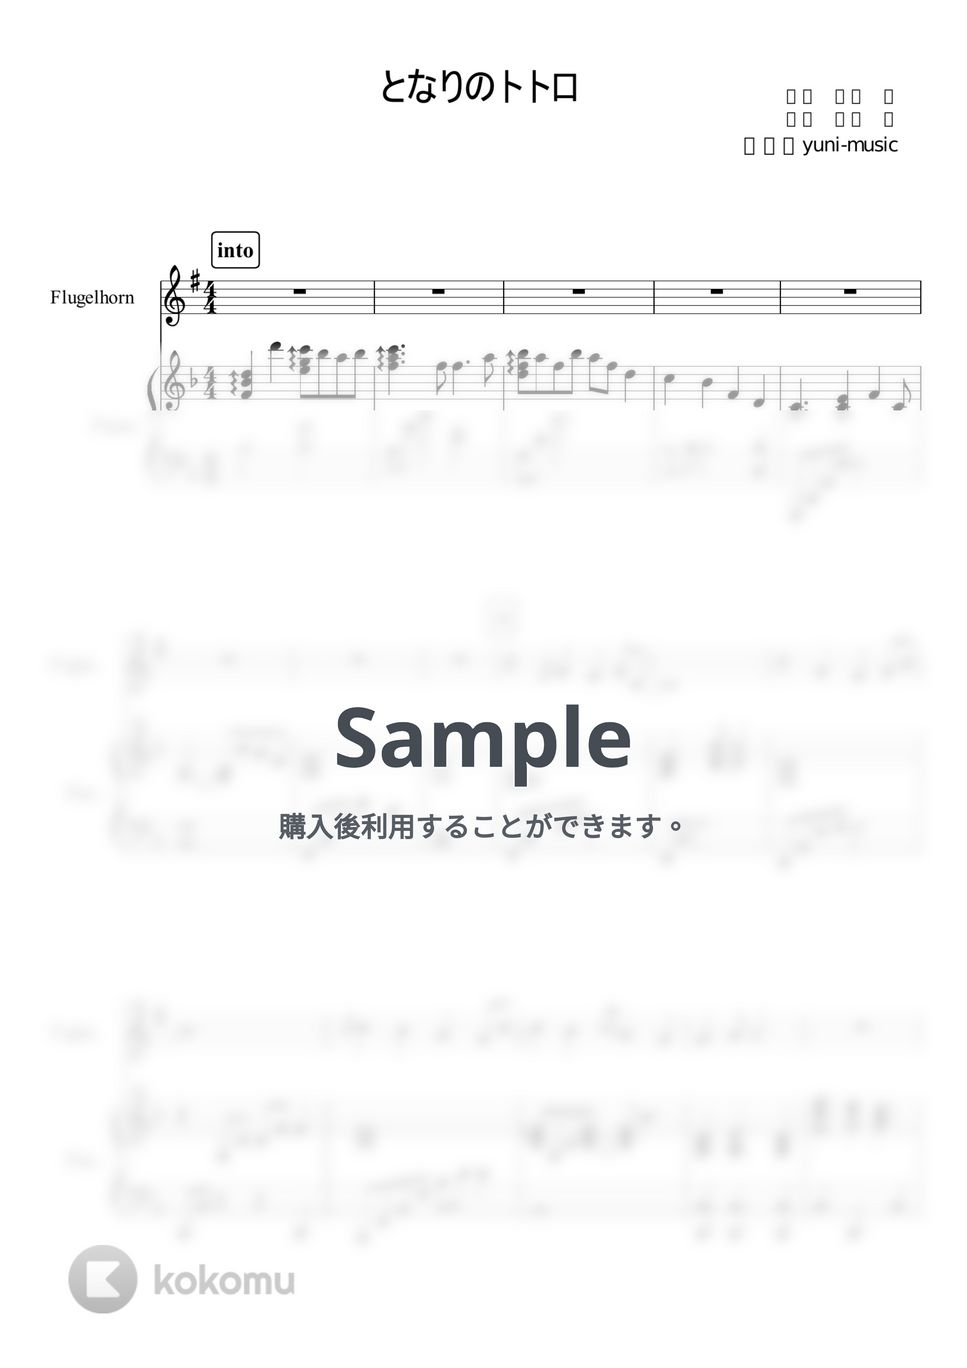 久石譲 - となりのトトロ Bb管　ピアノ伴奏 by yuni